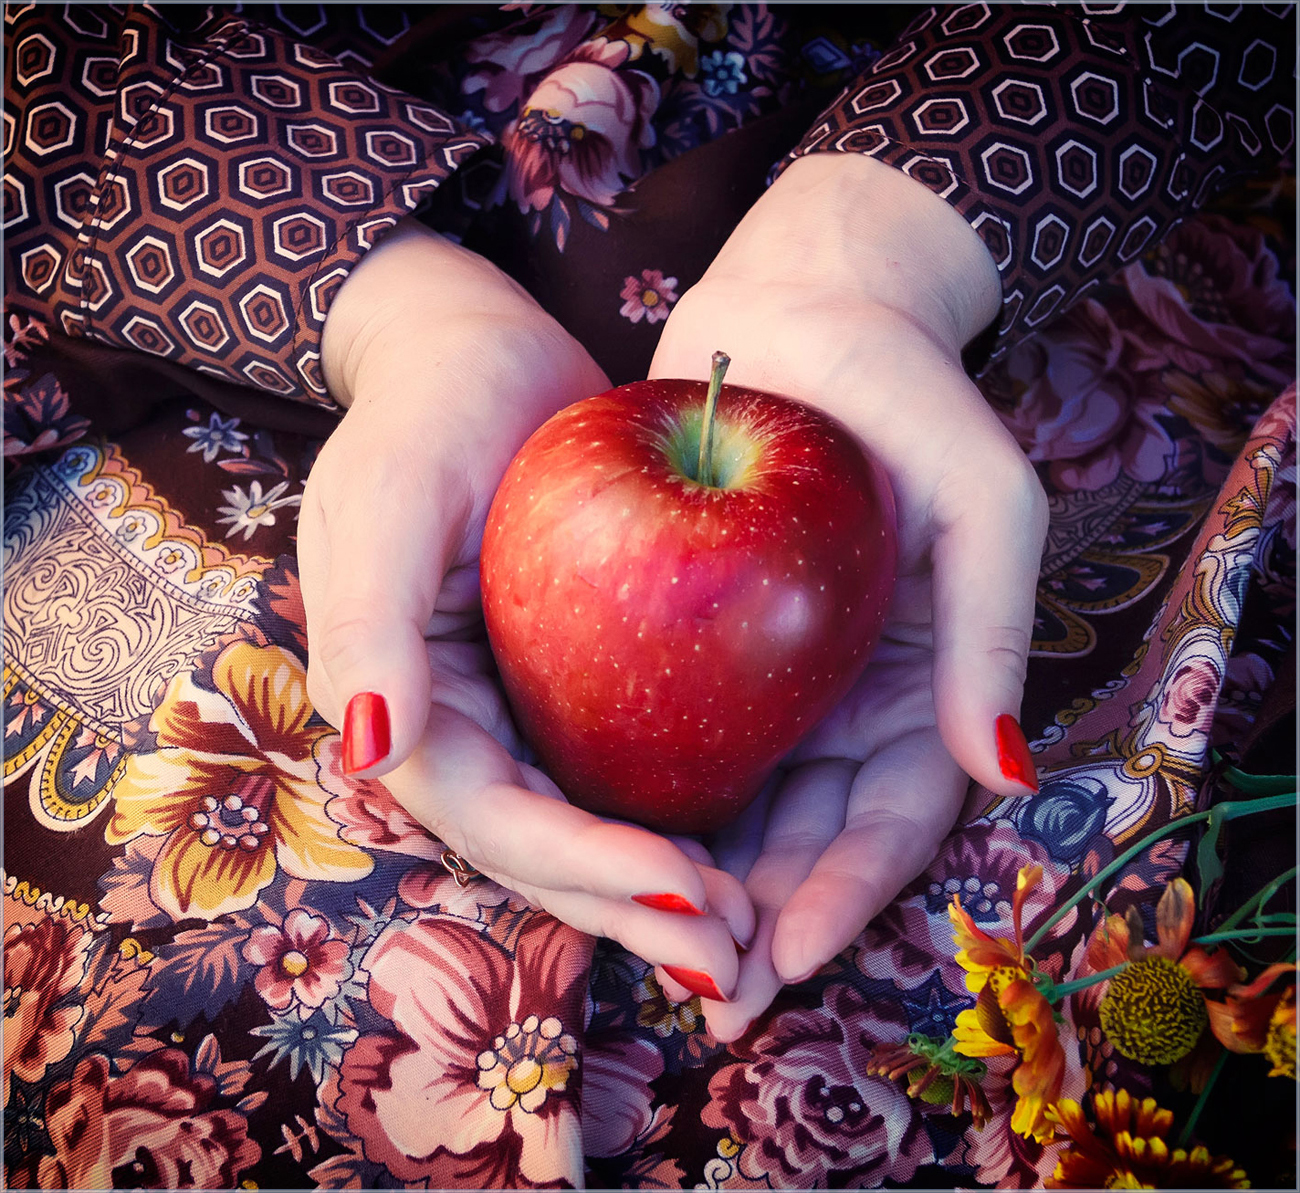 Замечены яблоки. Необычные яблоки. Девушка в яблоках необычно. Приснились красивые, большие яблоки. Девочка с яблоками.